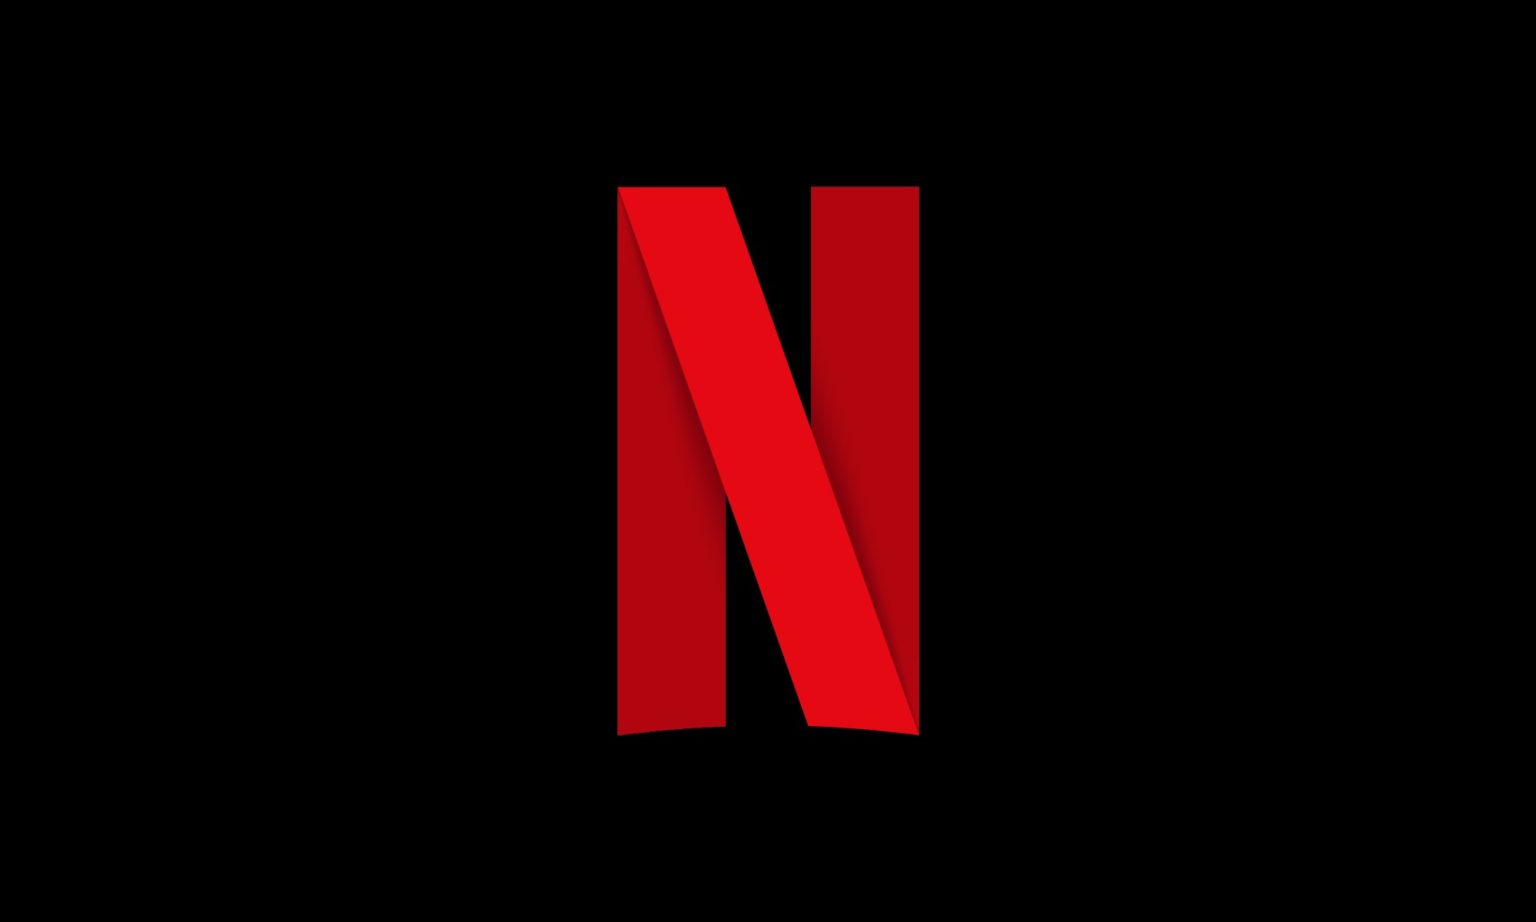 Netflix anuncia fim do plano básico no Brasil e aumenta preços nos EUA e  Europa